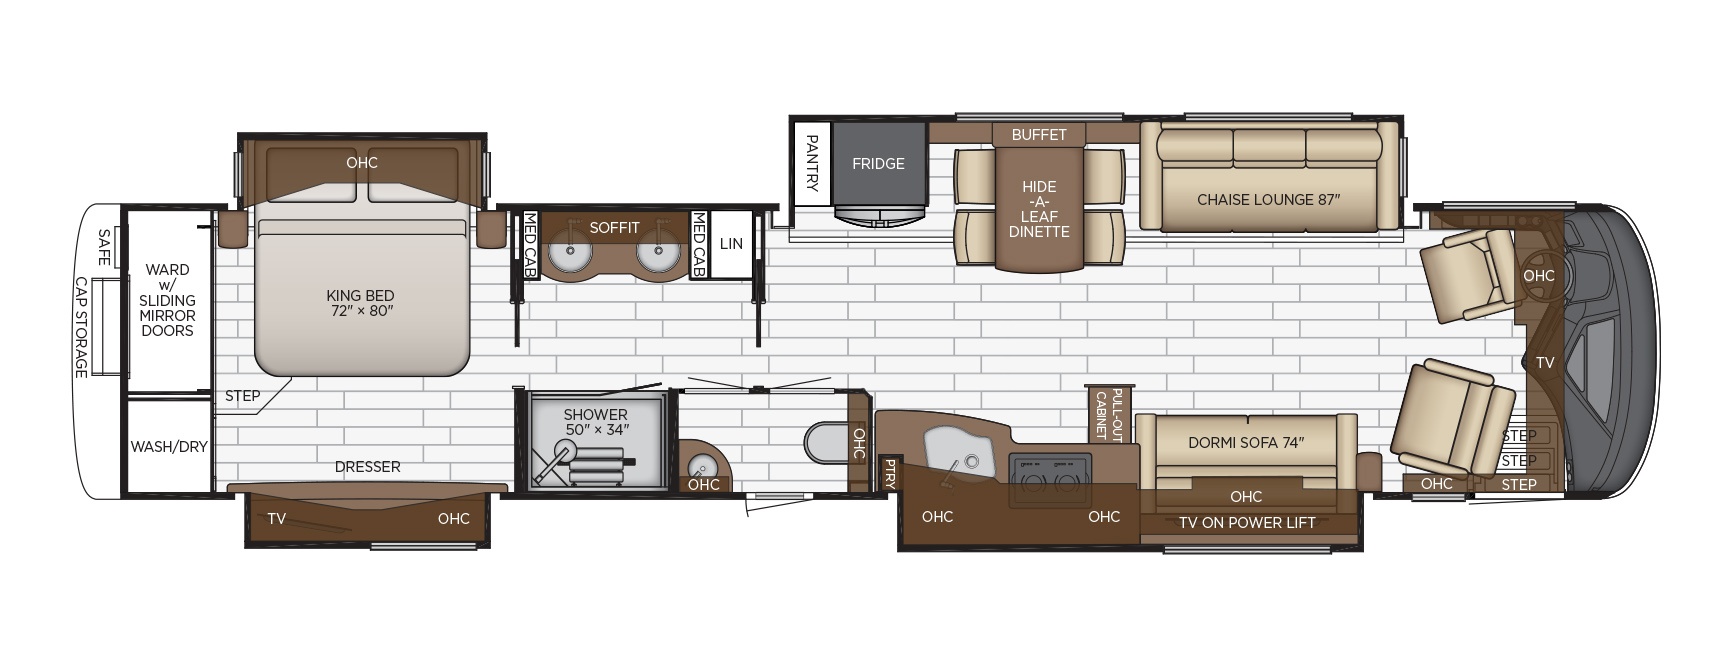 2020 Essex floor plan options Newmar